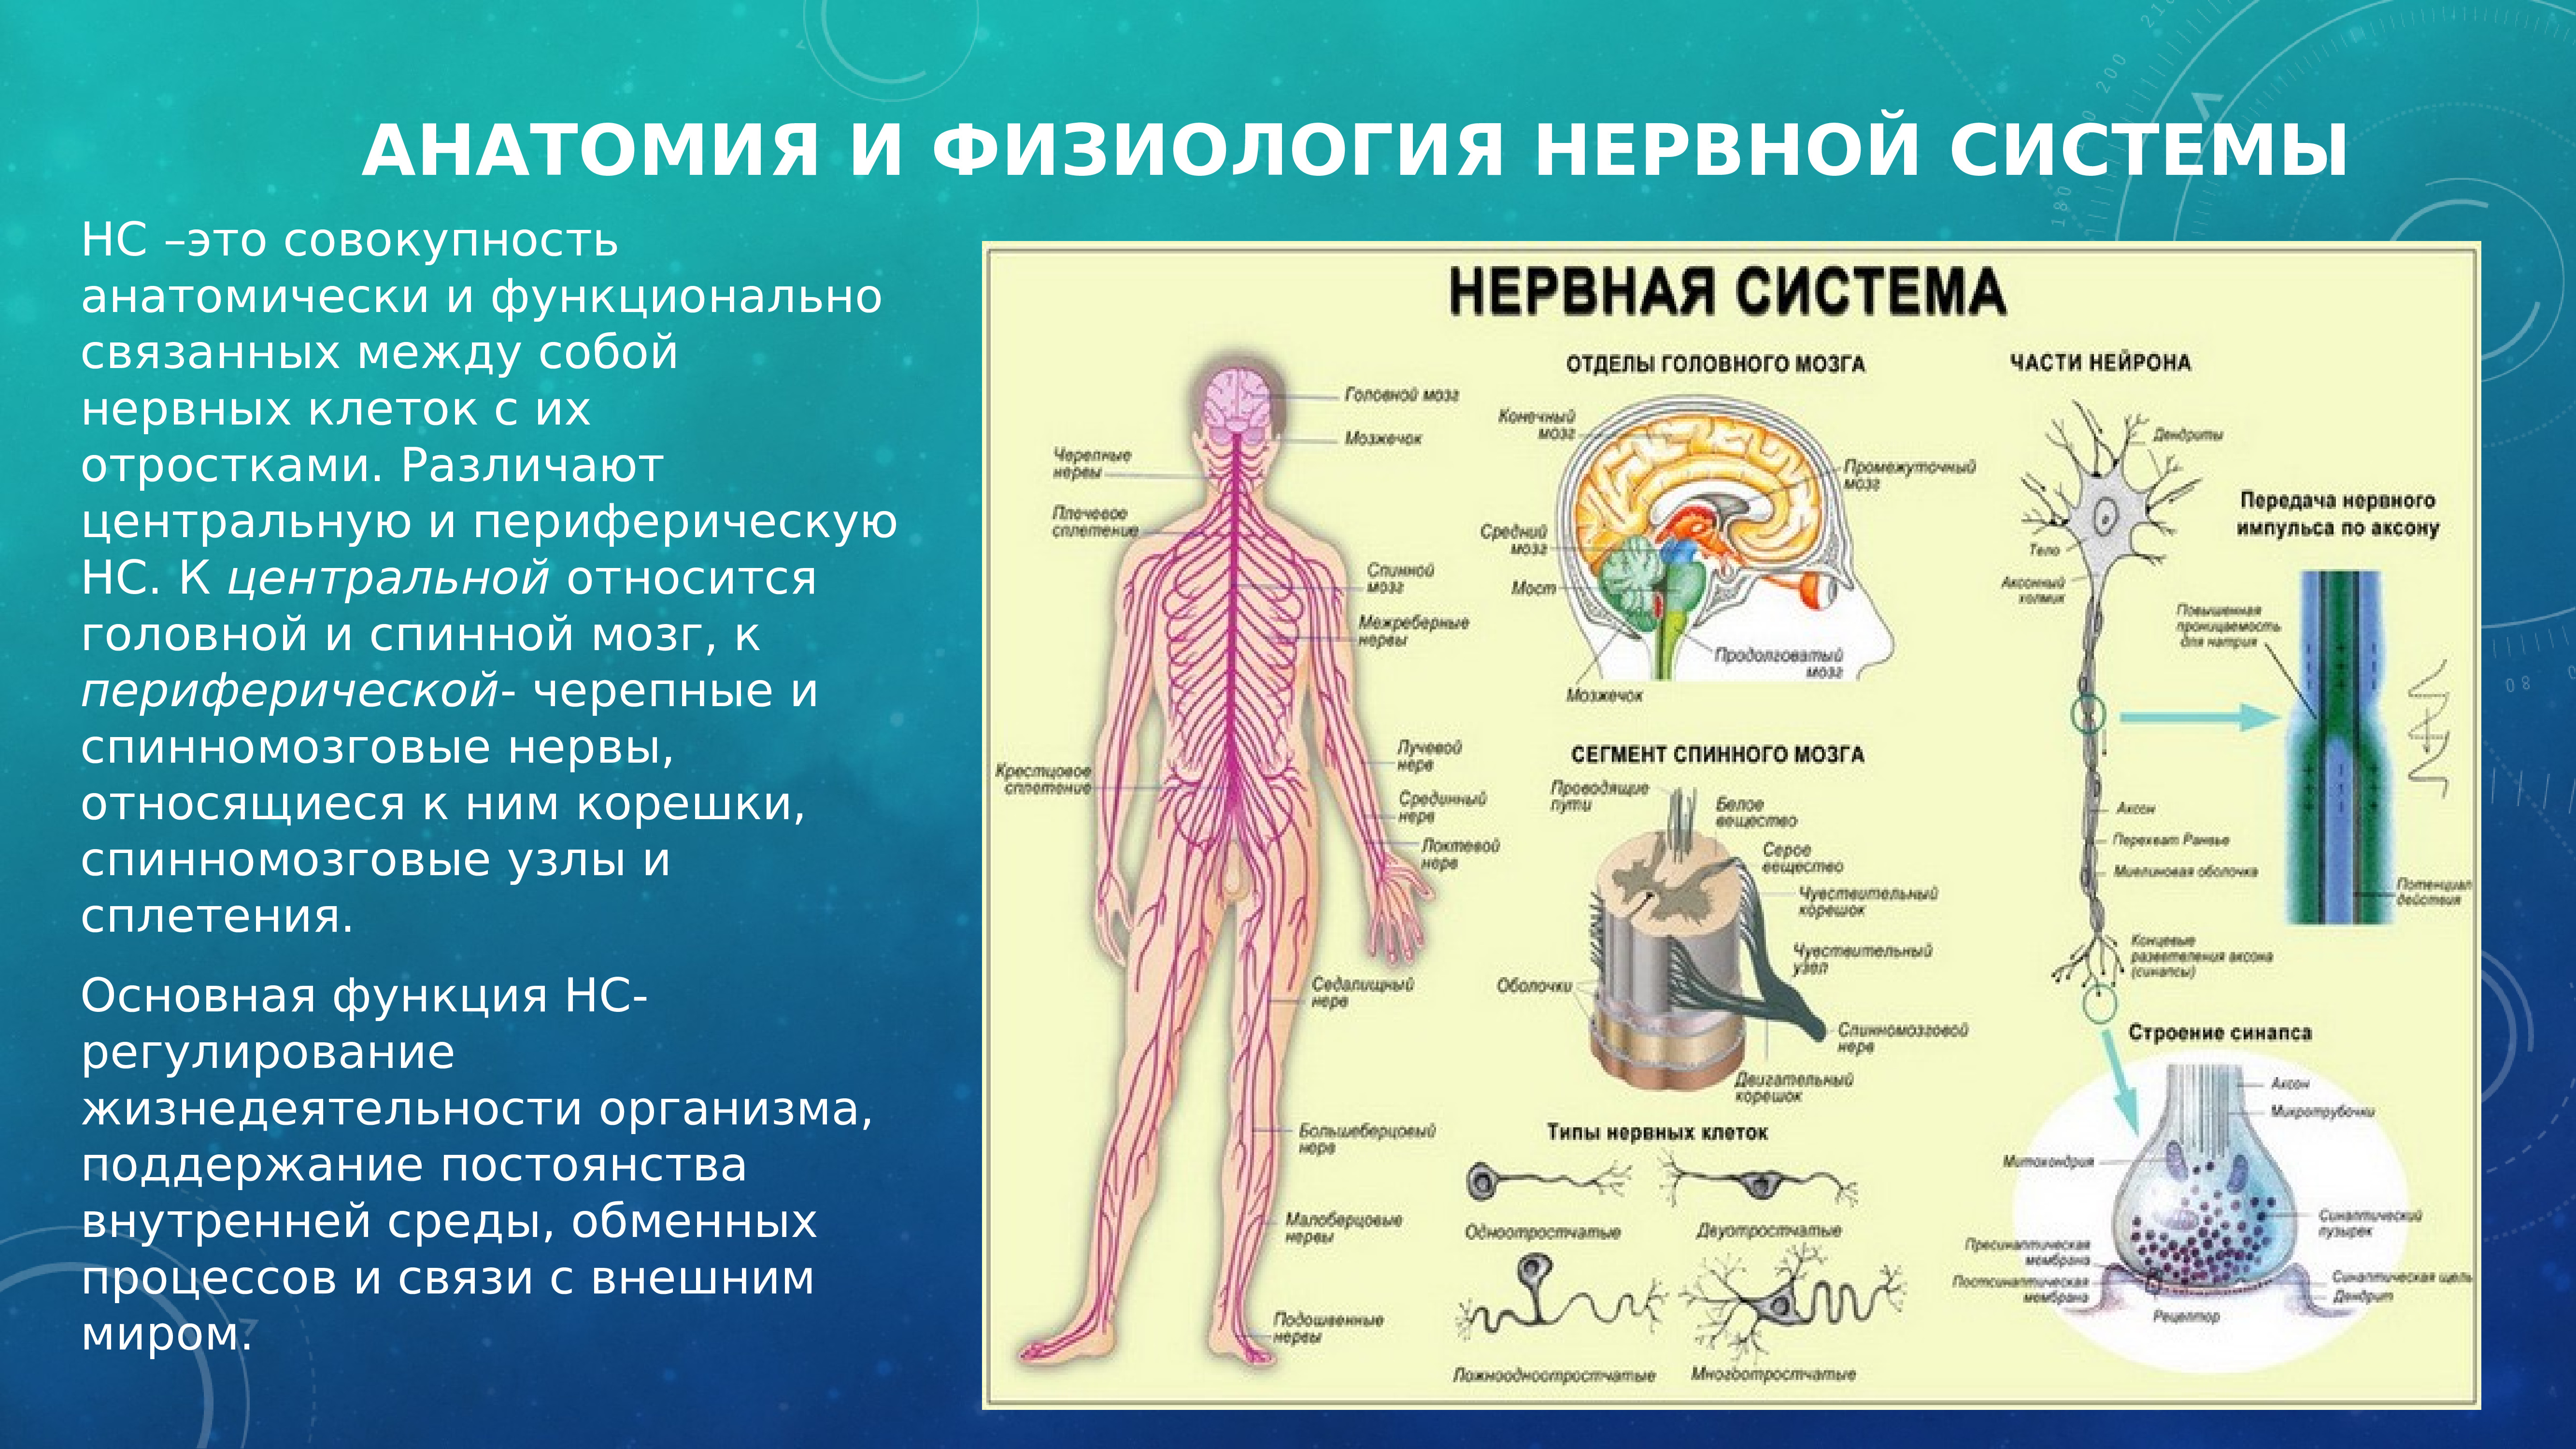 Какая функциональная часть нервной системы. Анатомия и физиология нервной системы. Разделение нервной системы на центральную и периферическую. Нервная система человека делится на центральную и периферическую. ЦНС И ПНС анатомия и физиология человека.